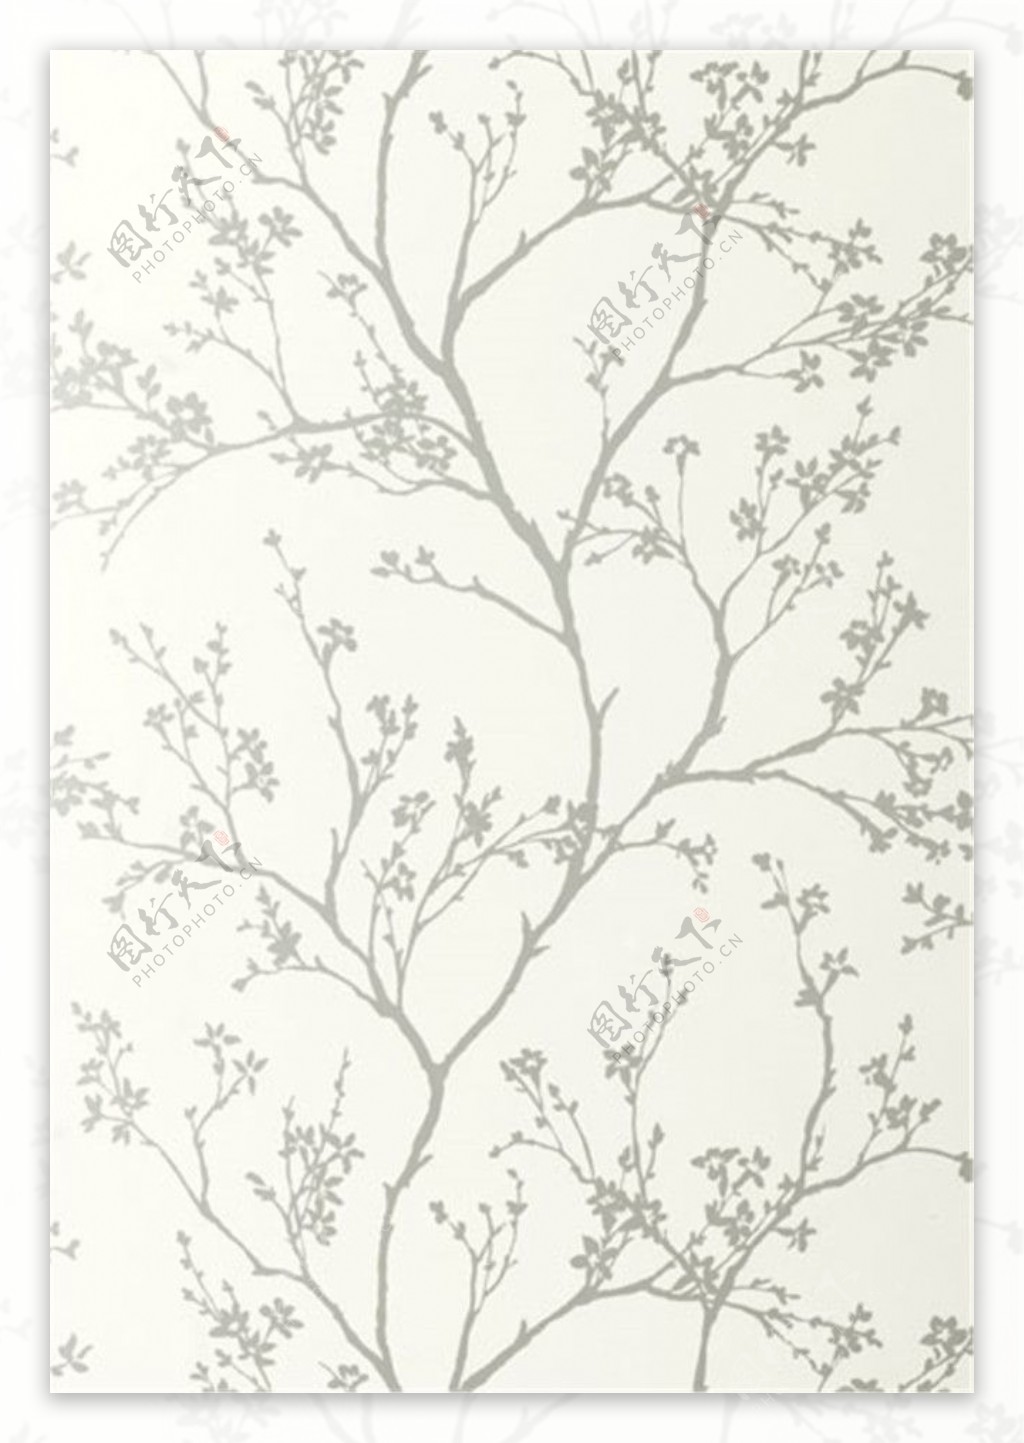 银白色树枝花纹壁纸图片